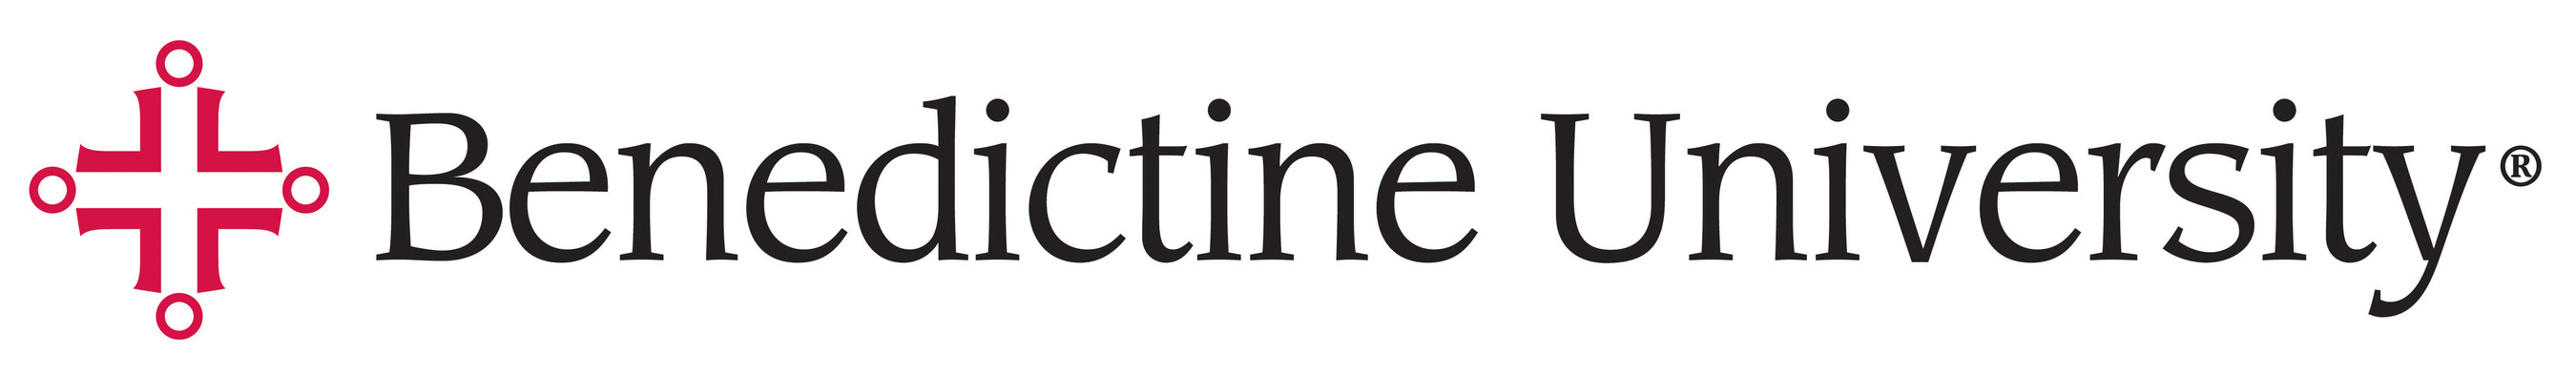 Benedictine University Logo.